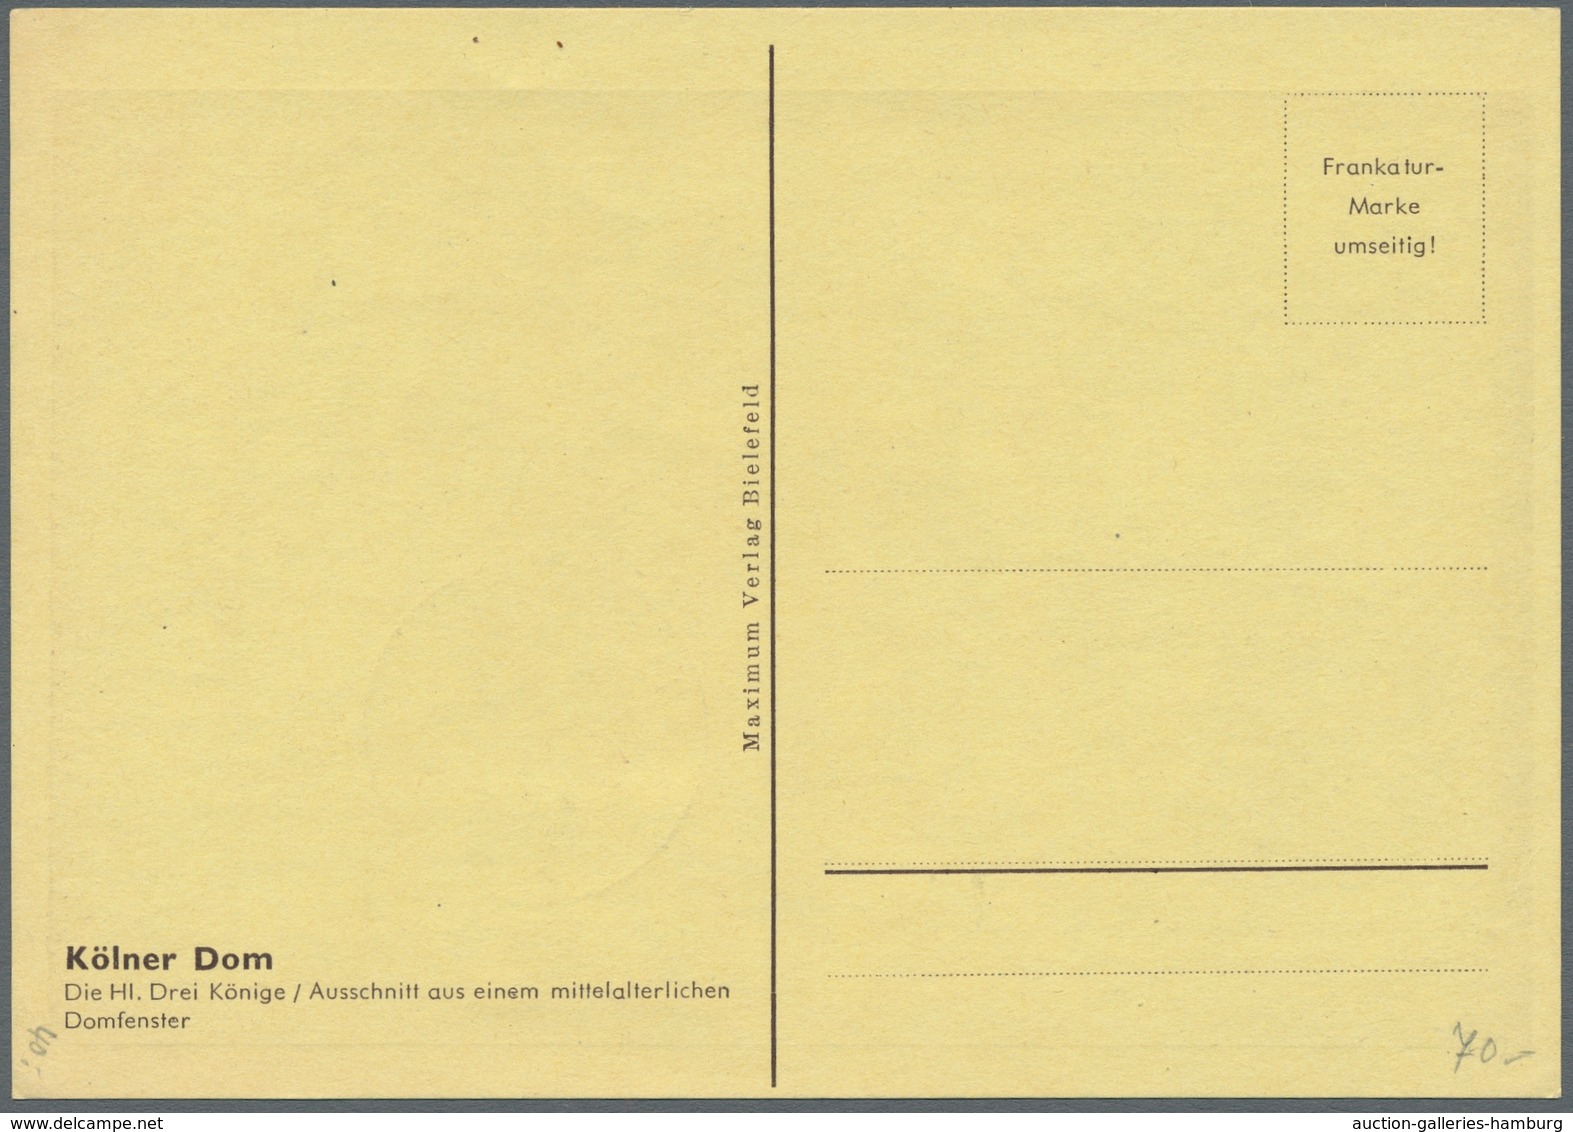 Bizone: 1948, "Kölner Dom", 4 Werte komplett auf vier Maximumkarten, dabei 2x FDC